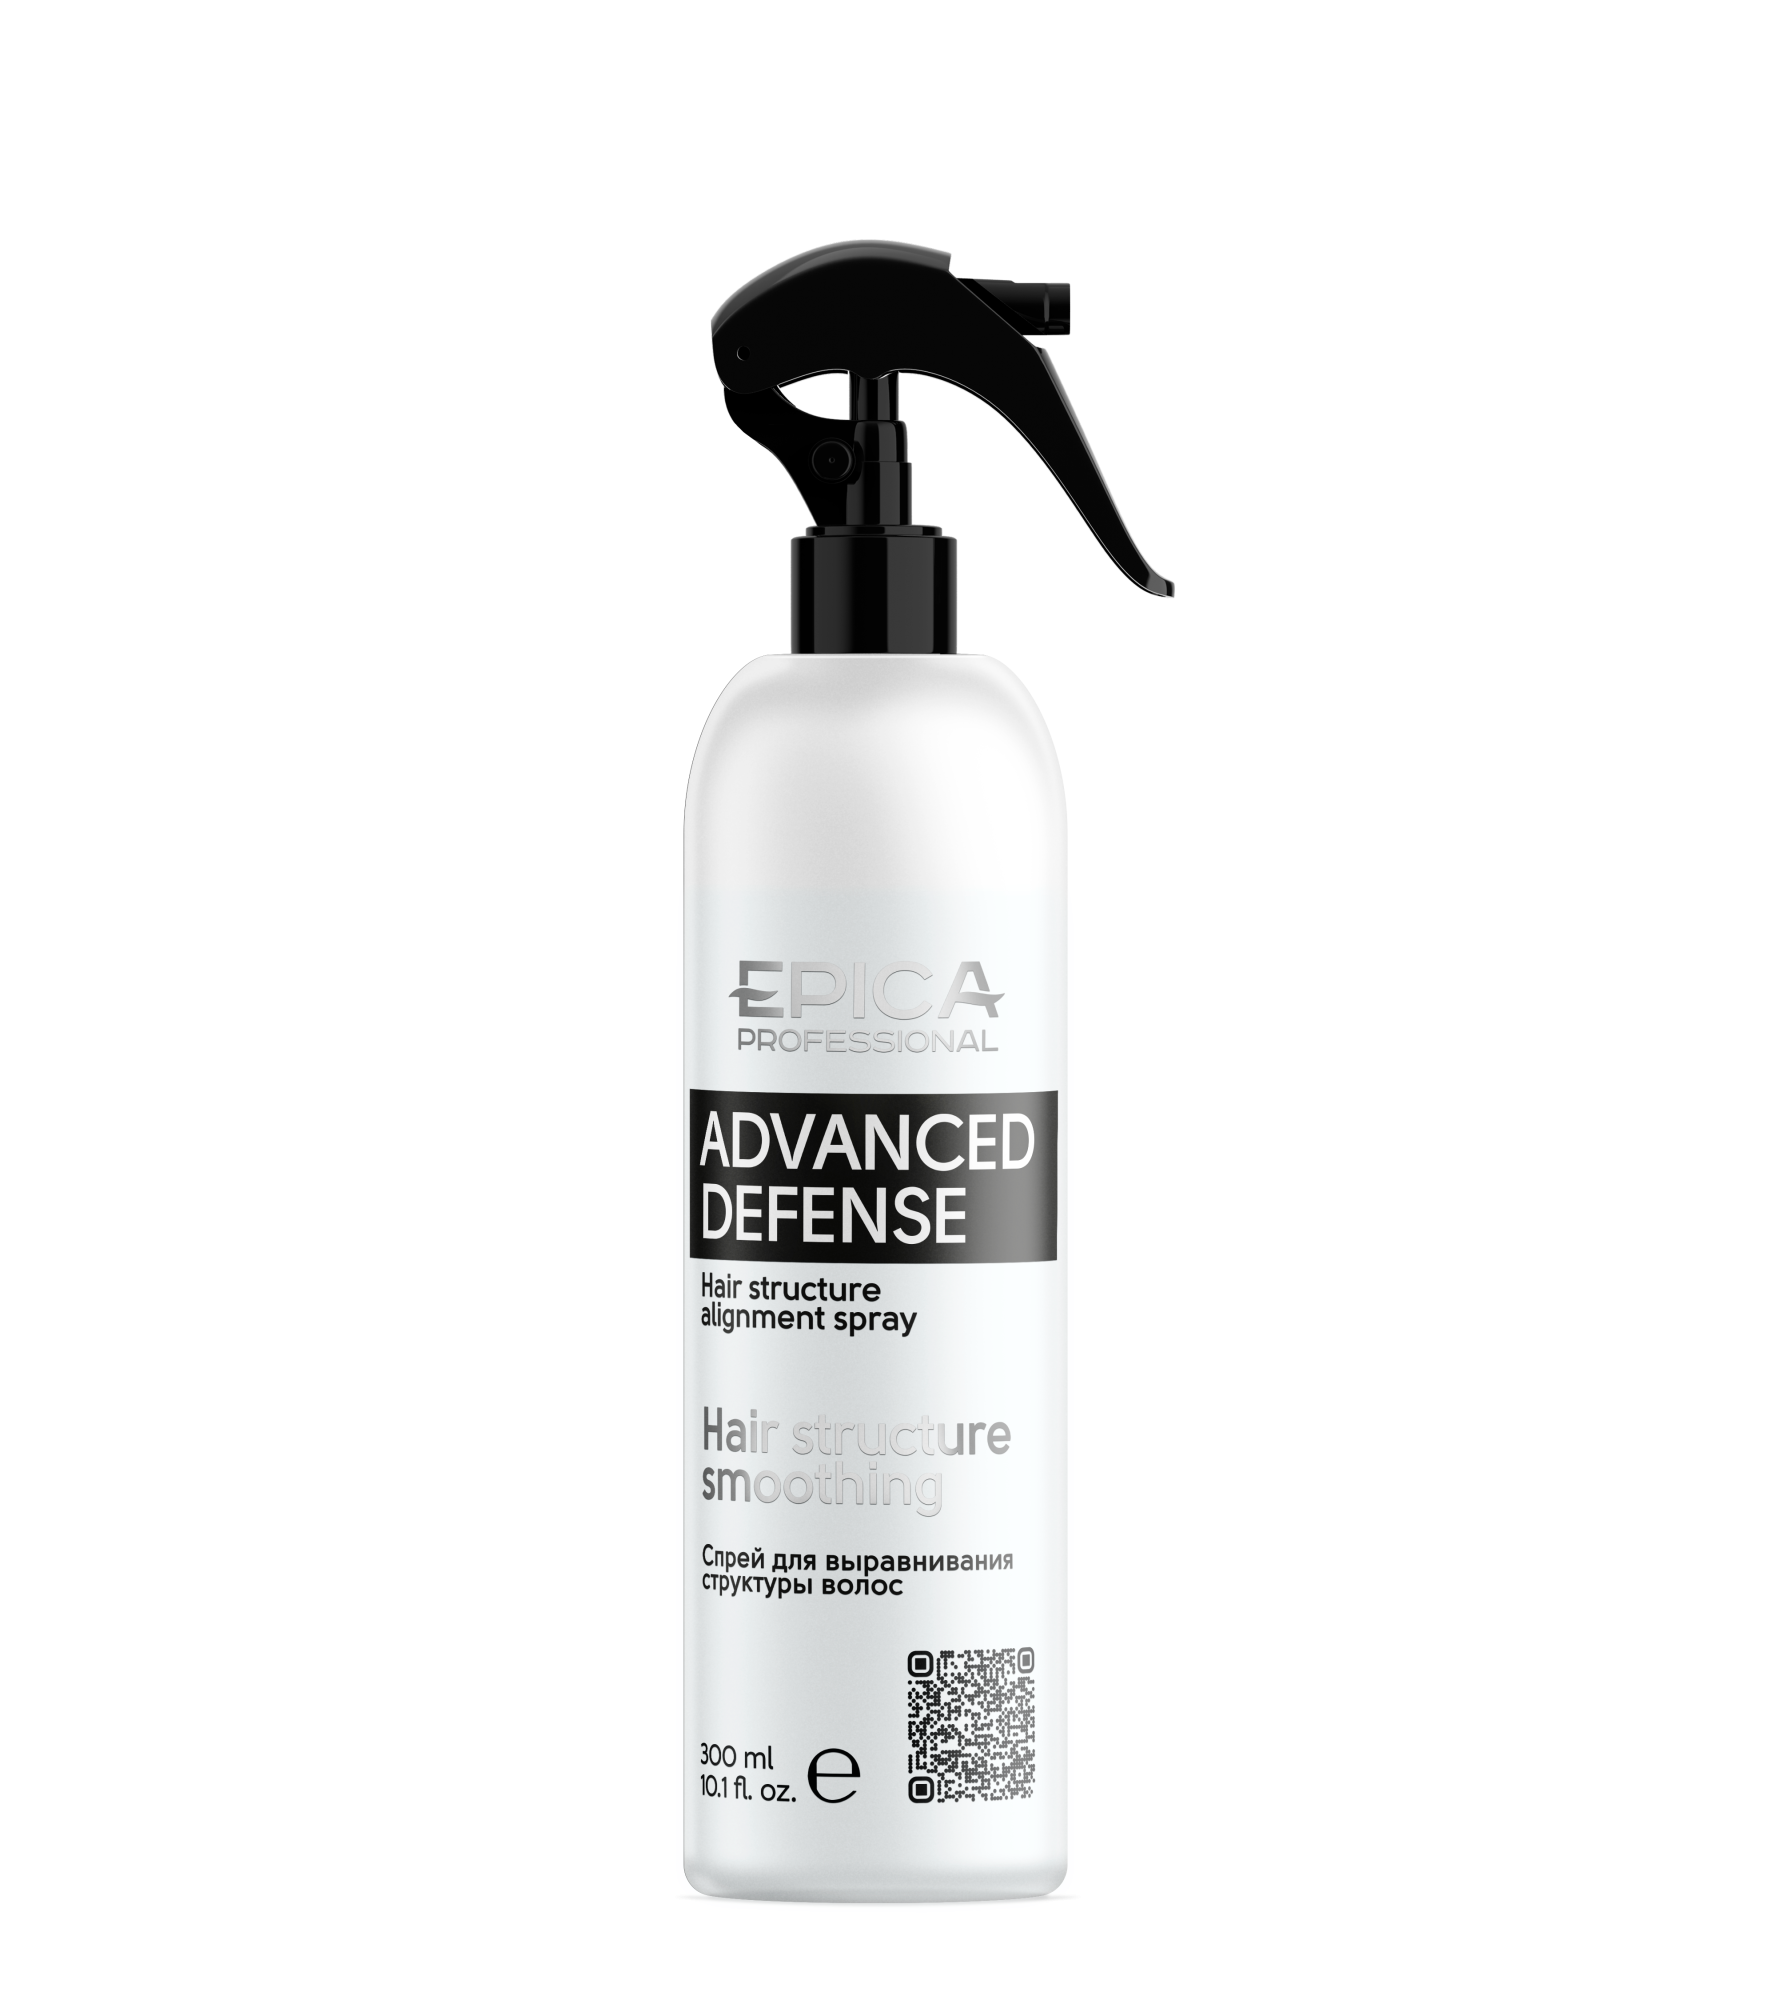 Спрей Epica Advanced Defense для выравнивания структуры волос, 300 мл средство для выравнивания структуры волос structure balancer